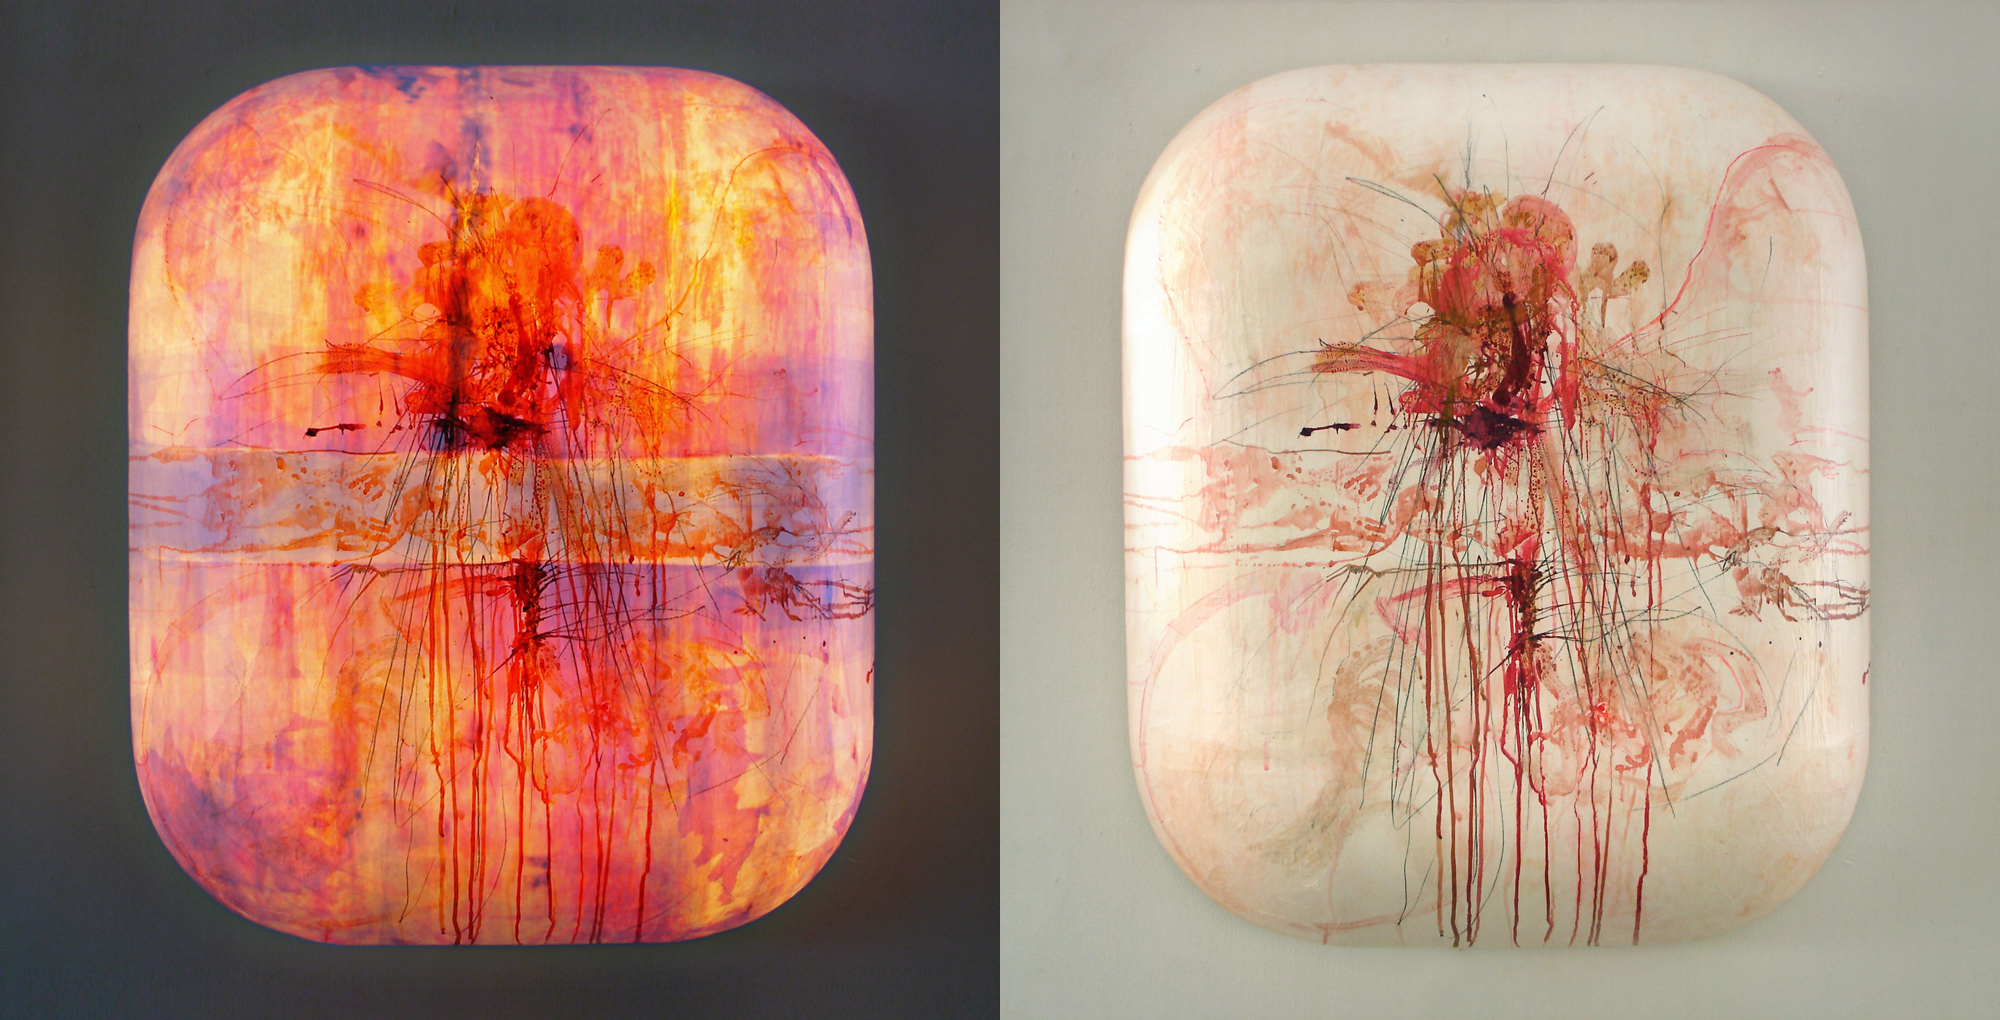 Leuchtobjekt (beleuchtet/unbeleuchtet) – Beizen und Ölfarben auf Papier, 83 x 70 x 21 cm I 2010